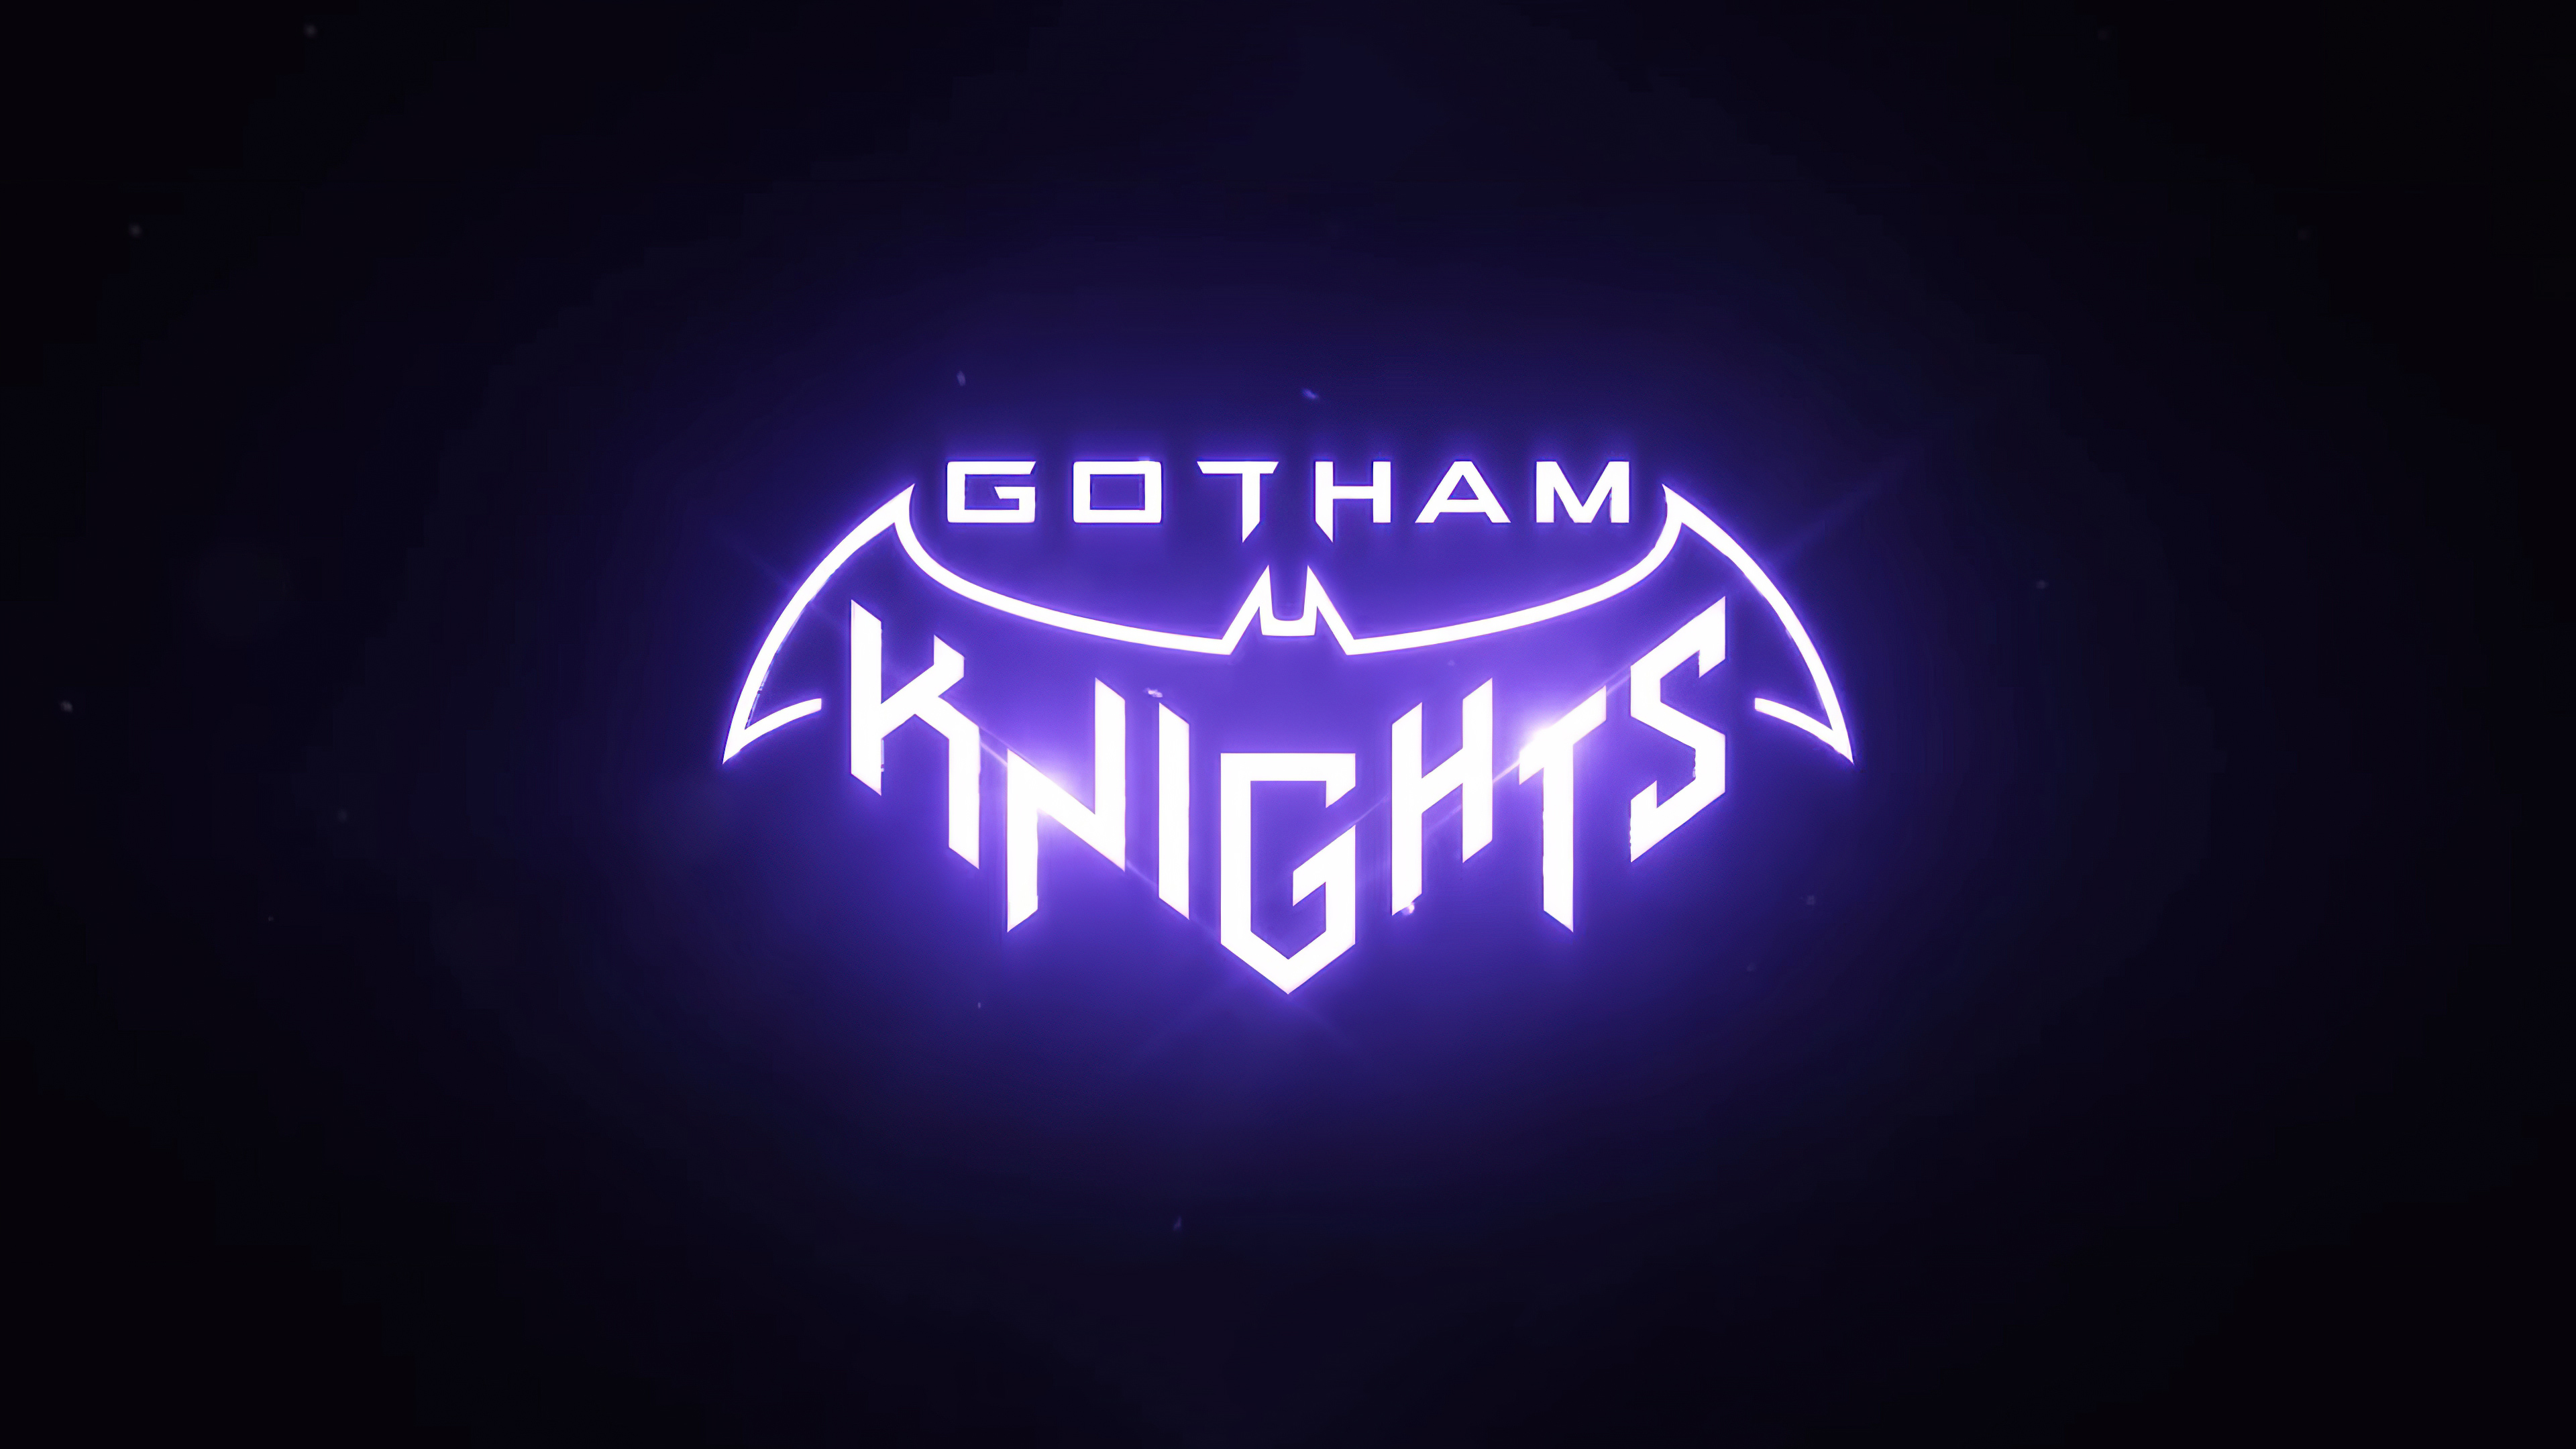 gotham knights steam download free